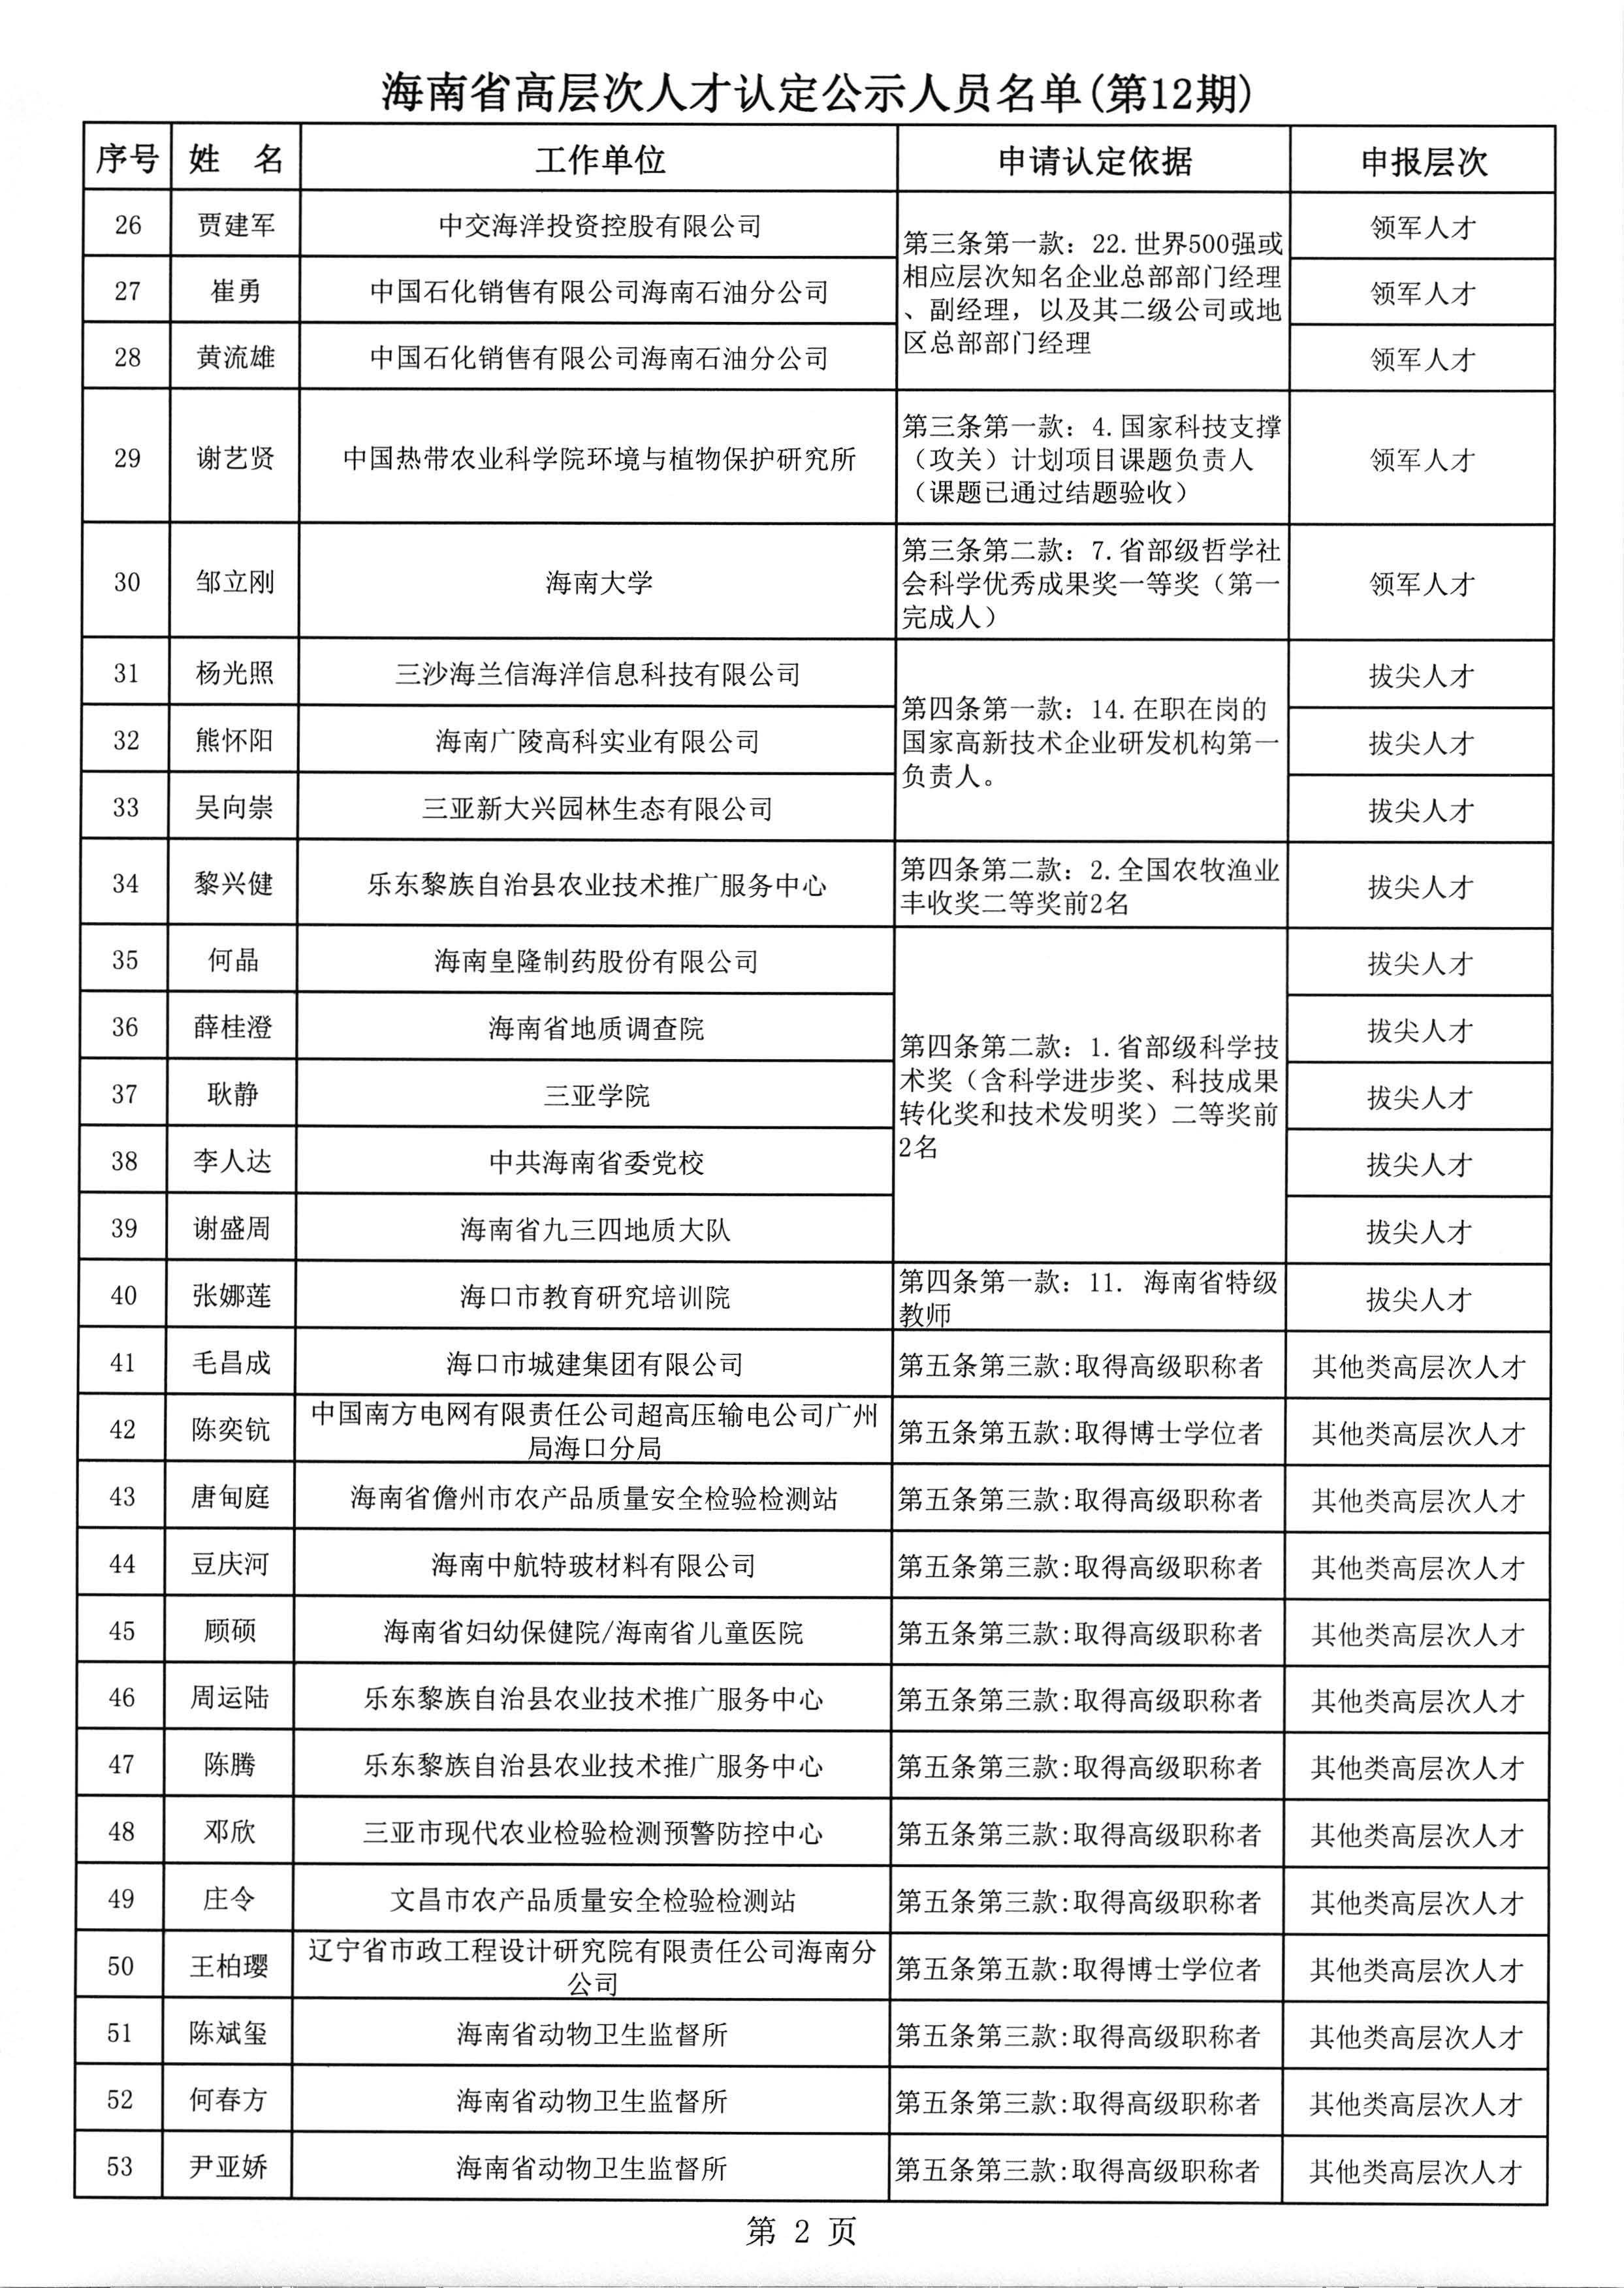 海南省高层次人才认定公示人员名单(第12期)_页面_3